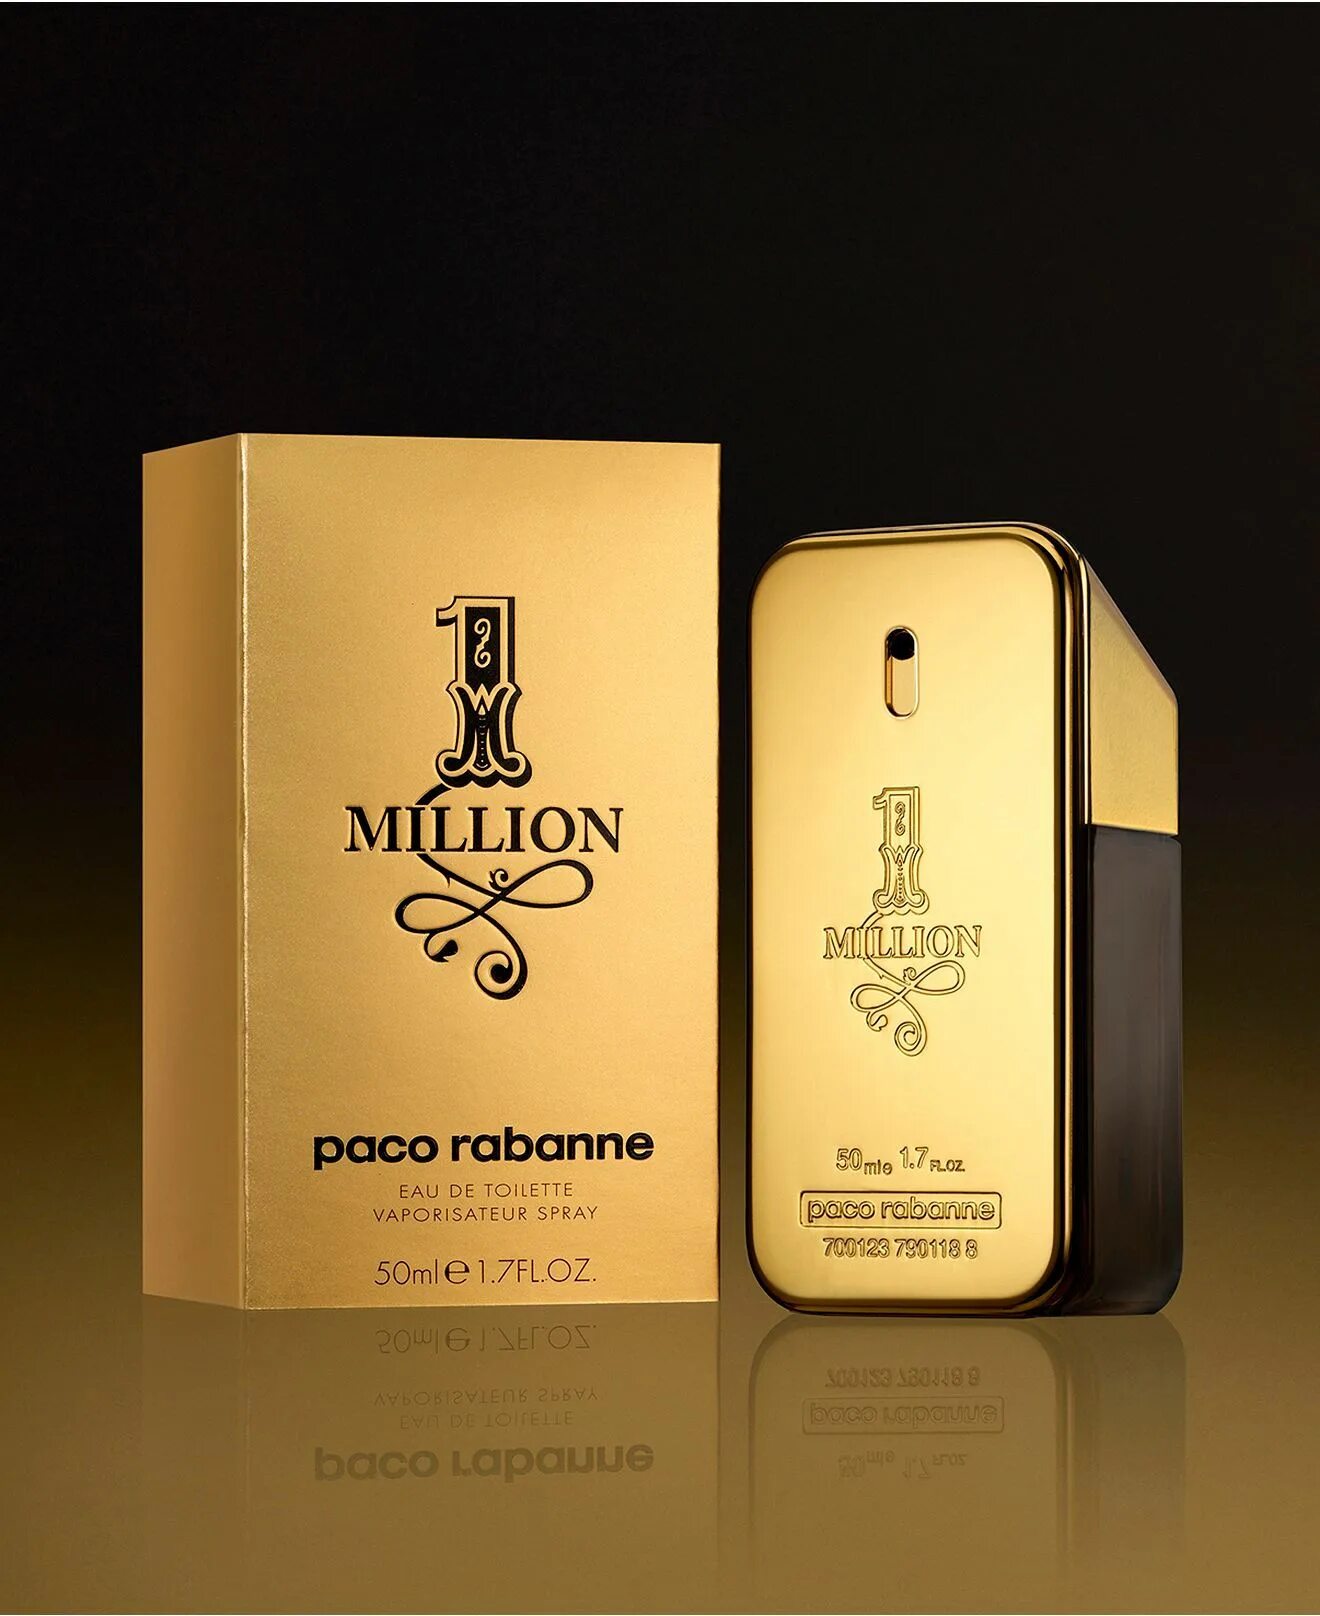 Paco Rabanne 1 million. One million Paco Rabanne. One million Paco Rabanne актер. Paco Rabanne one million 50ml EDT Spray.